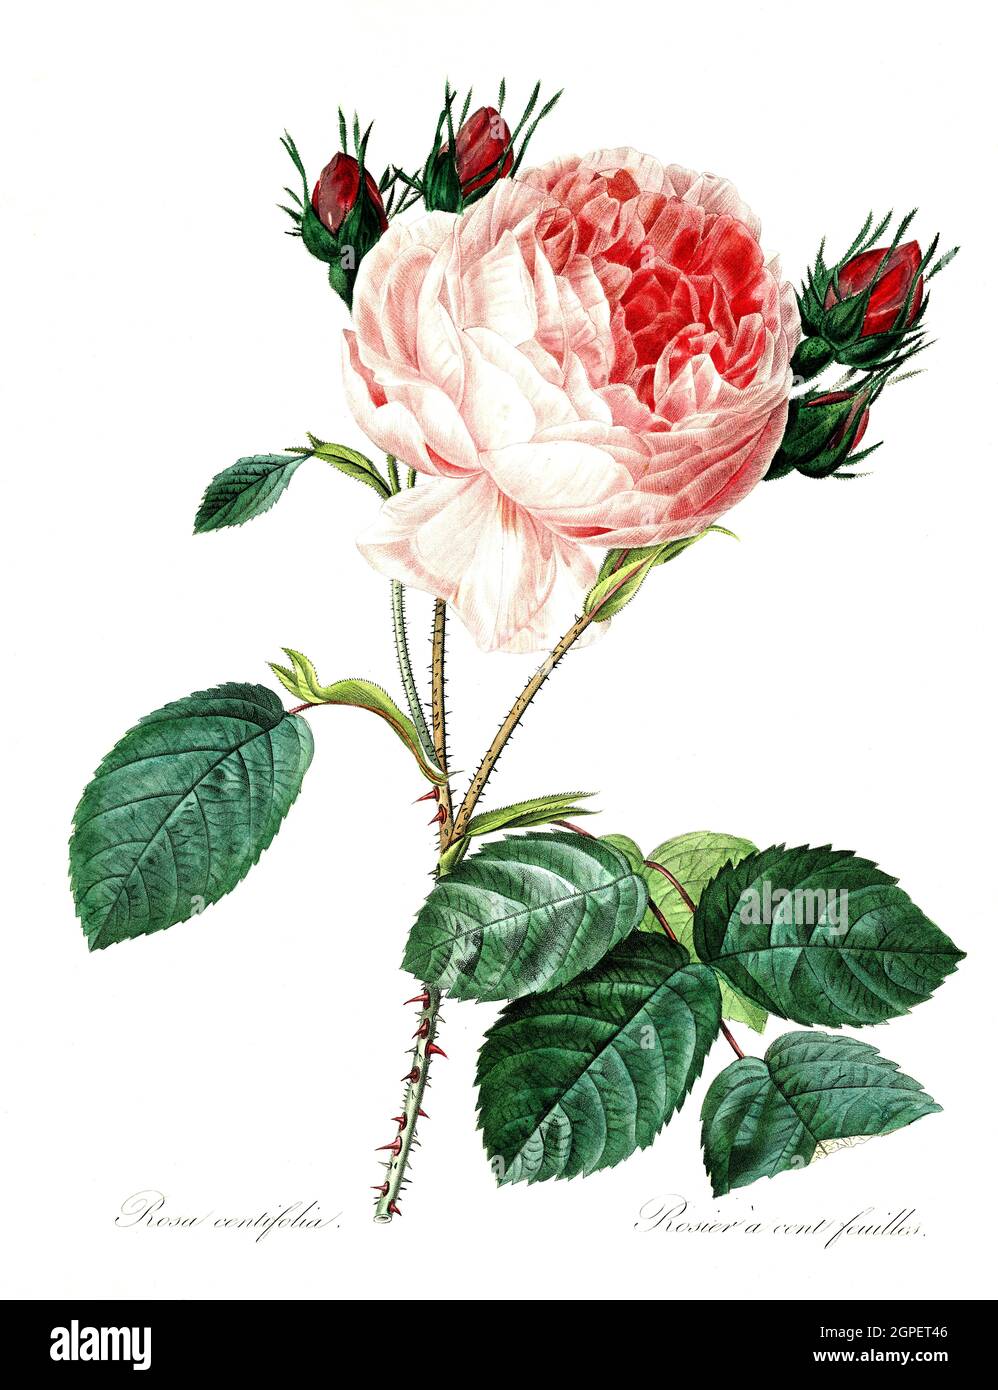 Rosa centifolia, Rose, Zentifolie, Rosengruppe mit gefüllten Blüten, die zu den alten Rosen zählt / Rosa centifolia, la rose de Provence, la rose de chou ou la rose de Mai, est une rose hybride développée par les éleveurs hollandais entre le XVIIe siècle et le XIXe siècle, Digital aufbereitete Reproduktion einer Aquarellzeichnung aus dem Jahre 1827, von P.J.Redoue, Kupfertafel / reproduction d'un dessin d'aquarelle réalisé en 1827, par P.J. Redoue, plaque de cuivre, Originaldatum unbekannt Banque D'Images